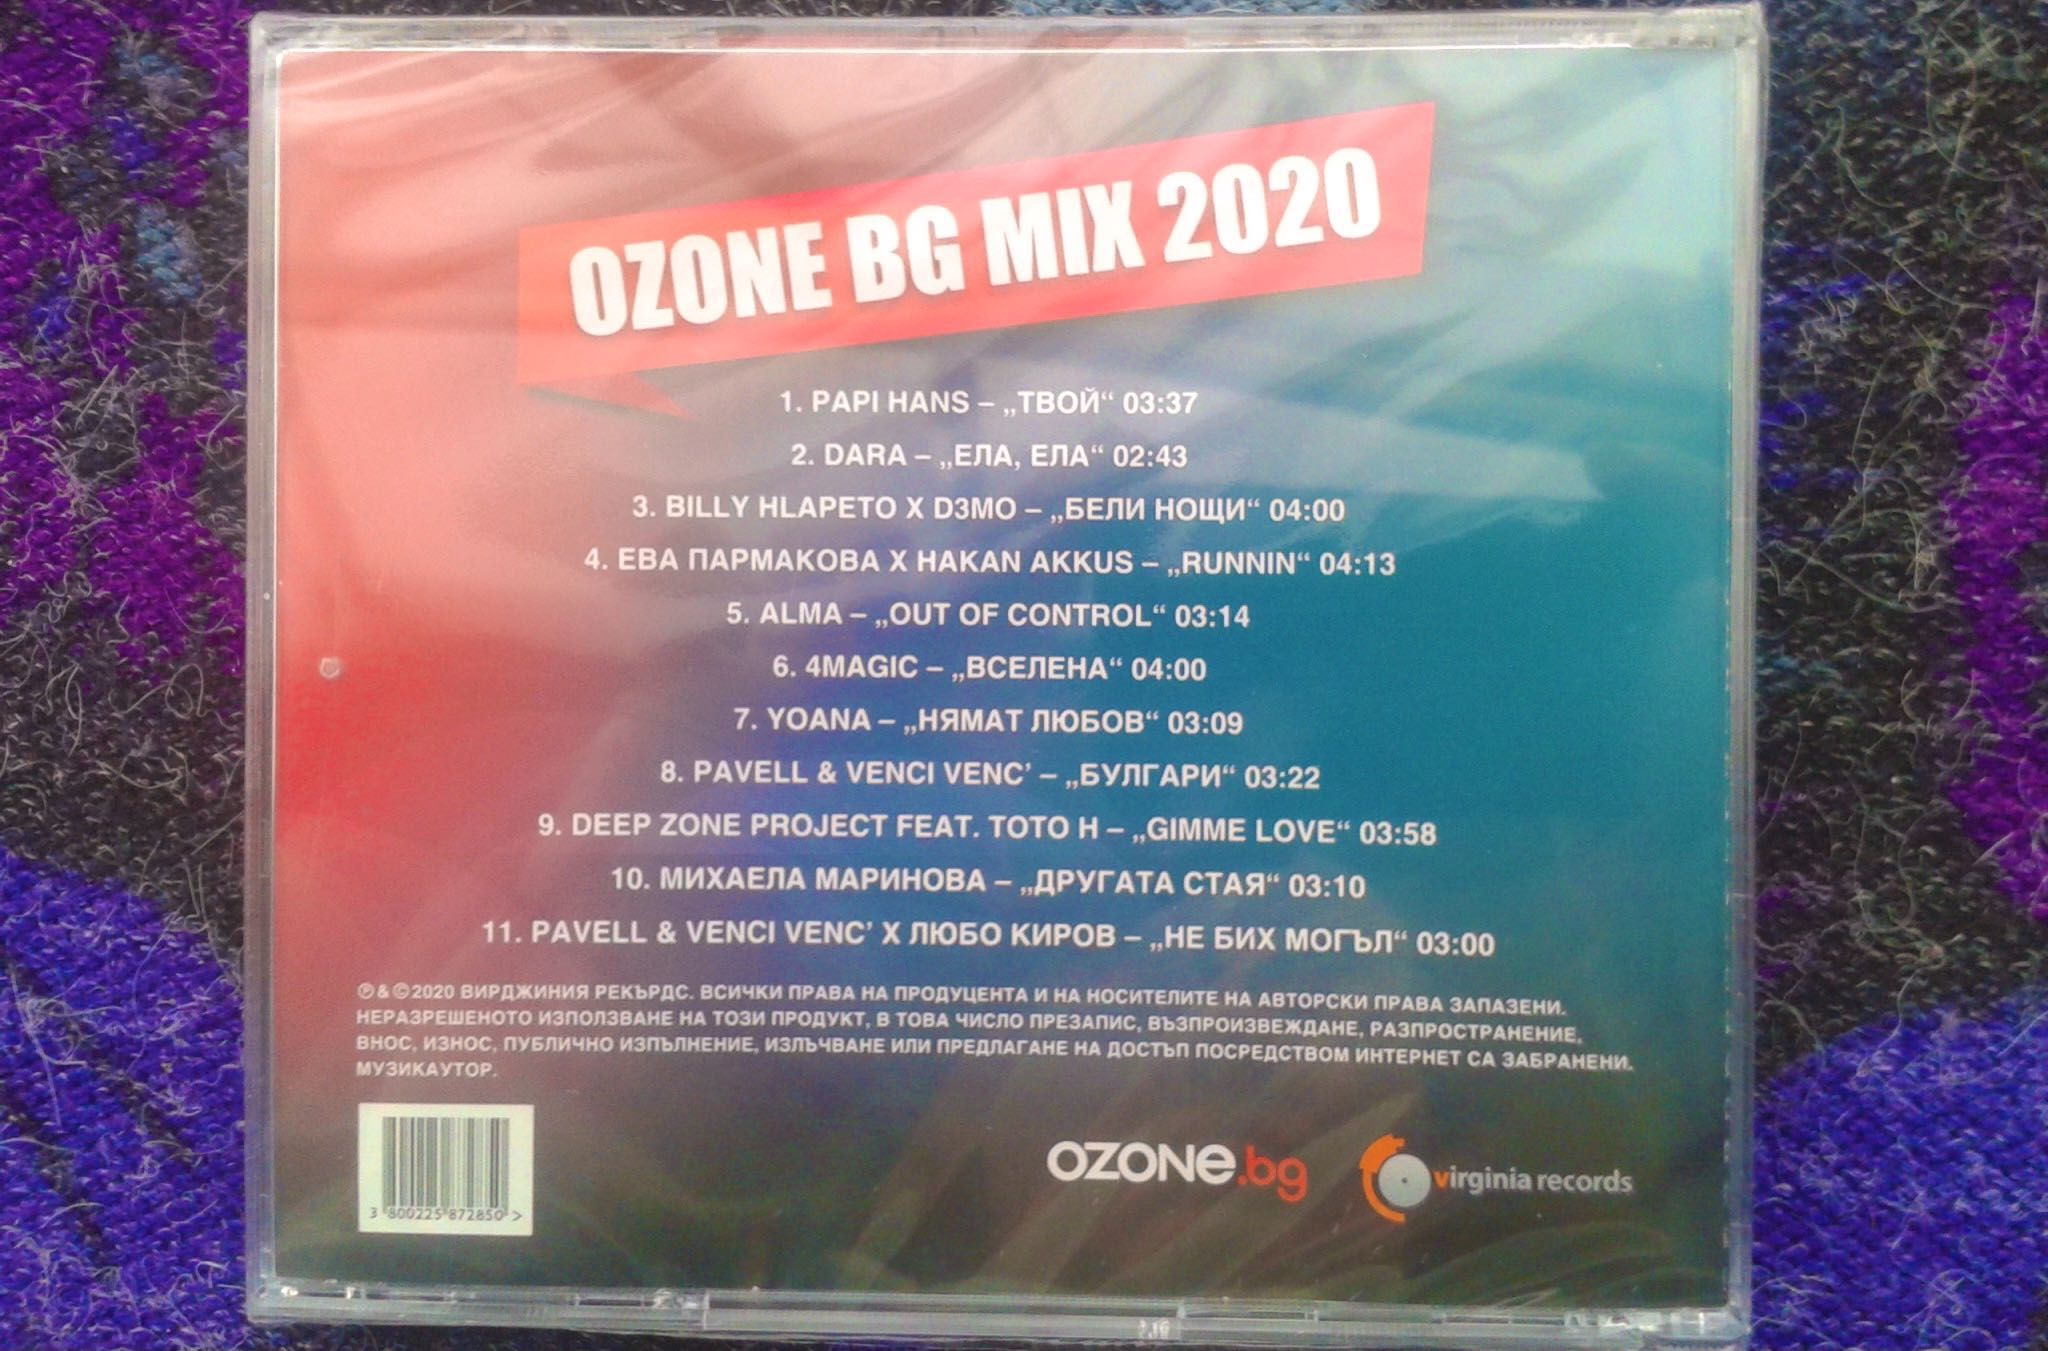 Ozone BG MIX 2020